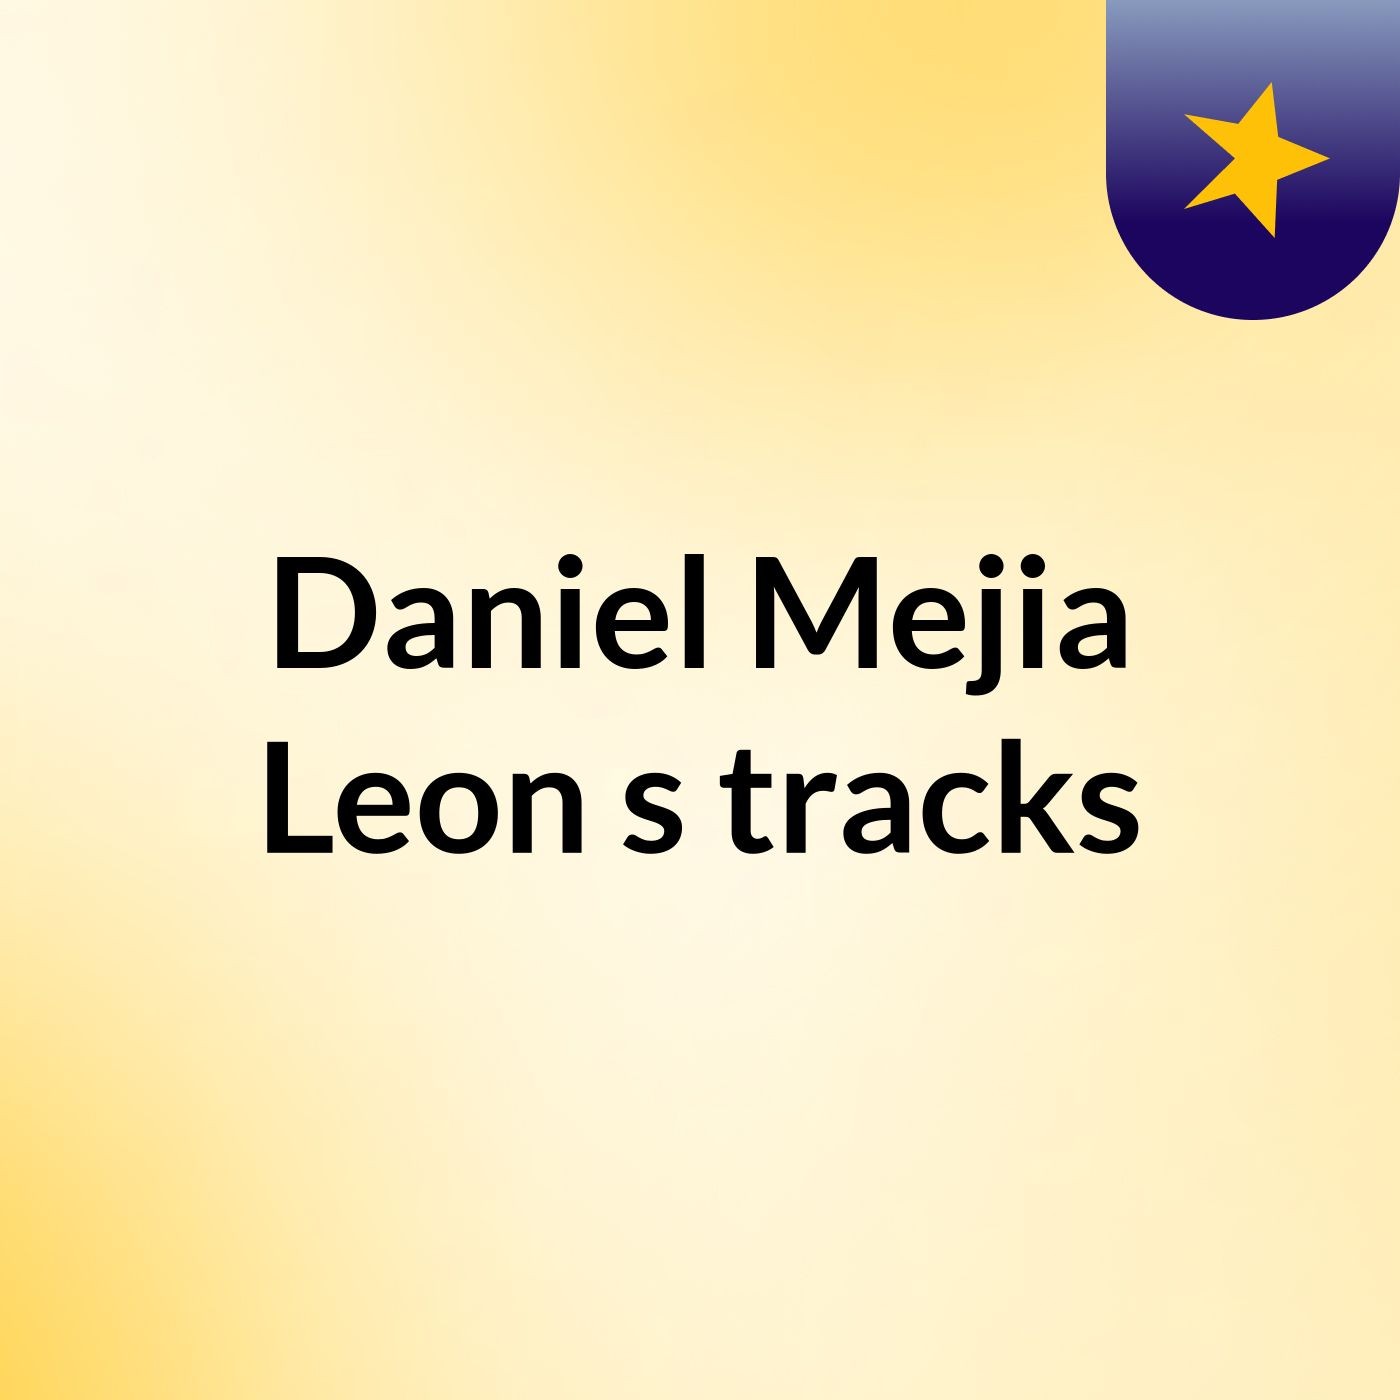 Daniel Mejia Leon's tracks